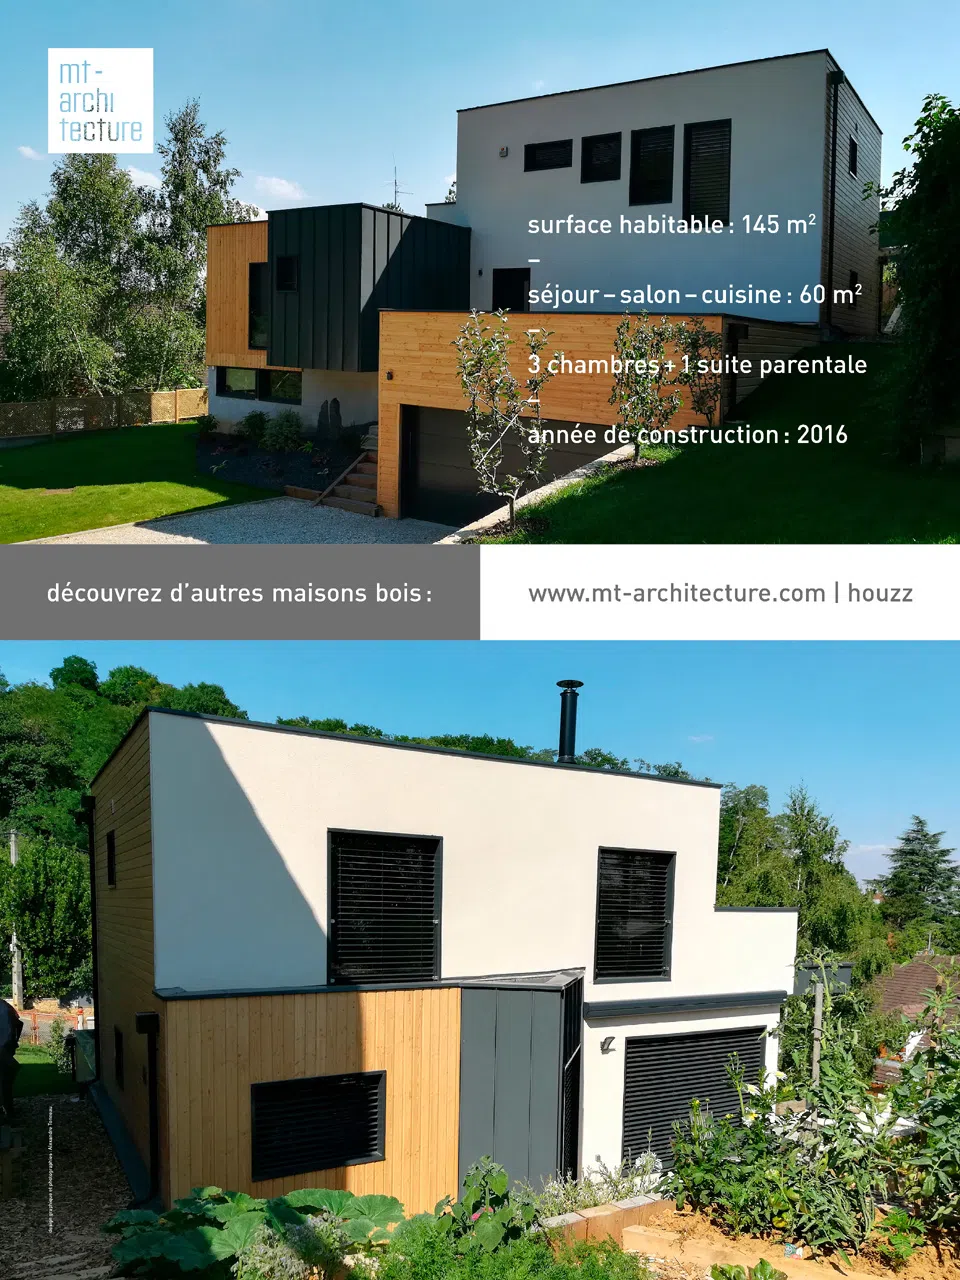 Affiche au format 600 x 800 mm portrait, présentant une maison en bois de 145 m2 créée par l’atelier MT-Architecture.